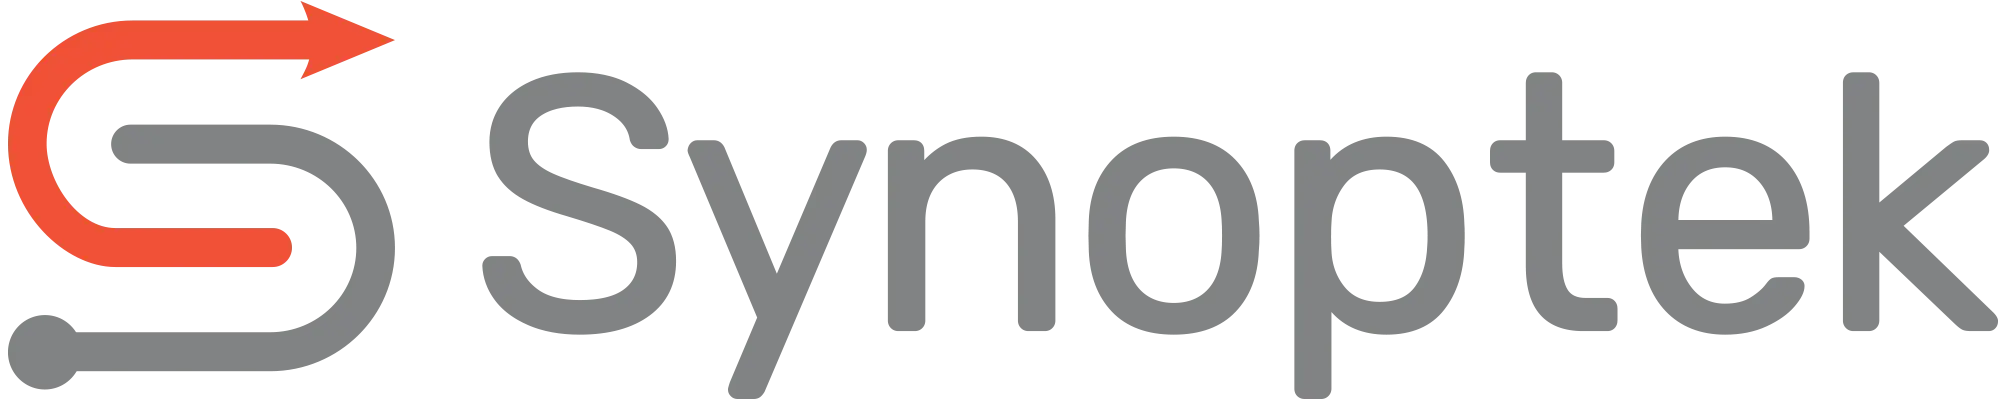 Synoptek logo